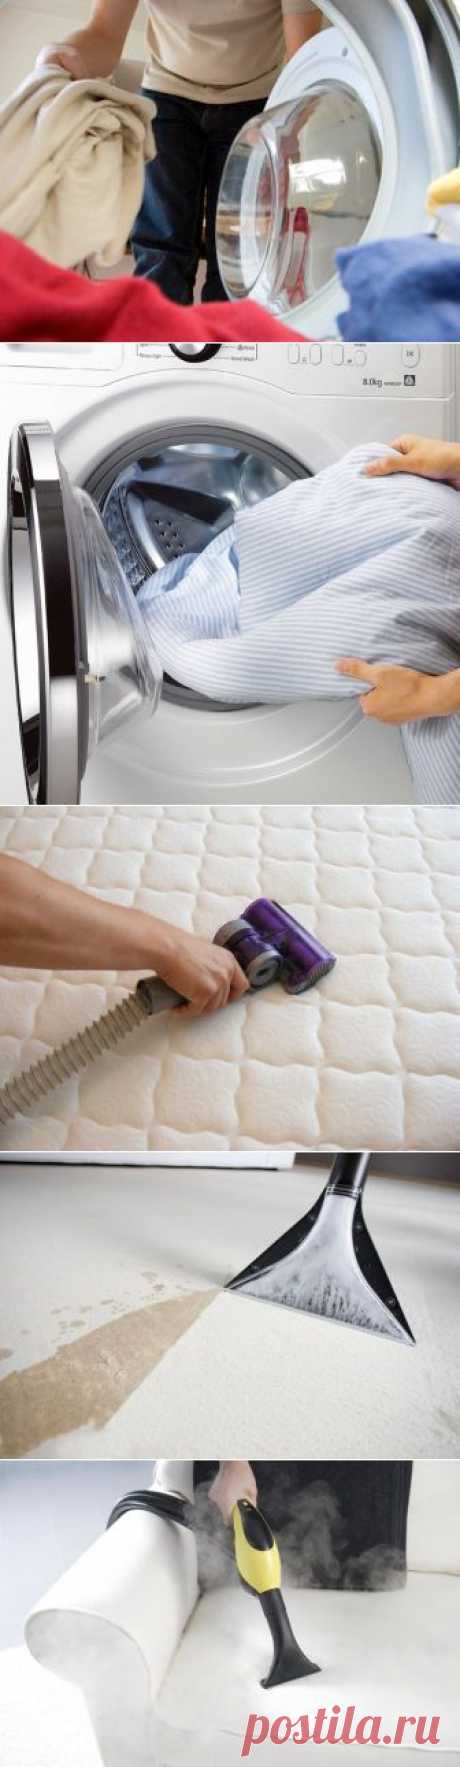 (+1) тема - Большая стирка: как правильно чистить подушки, матрасы и домашний текстиль | МОЙ ДОМ